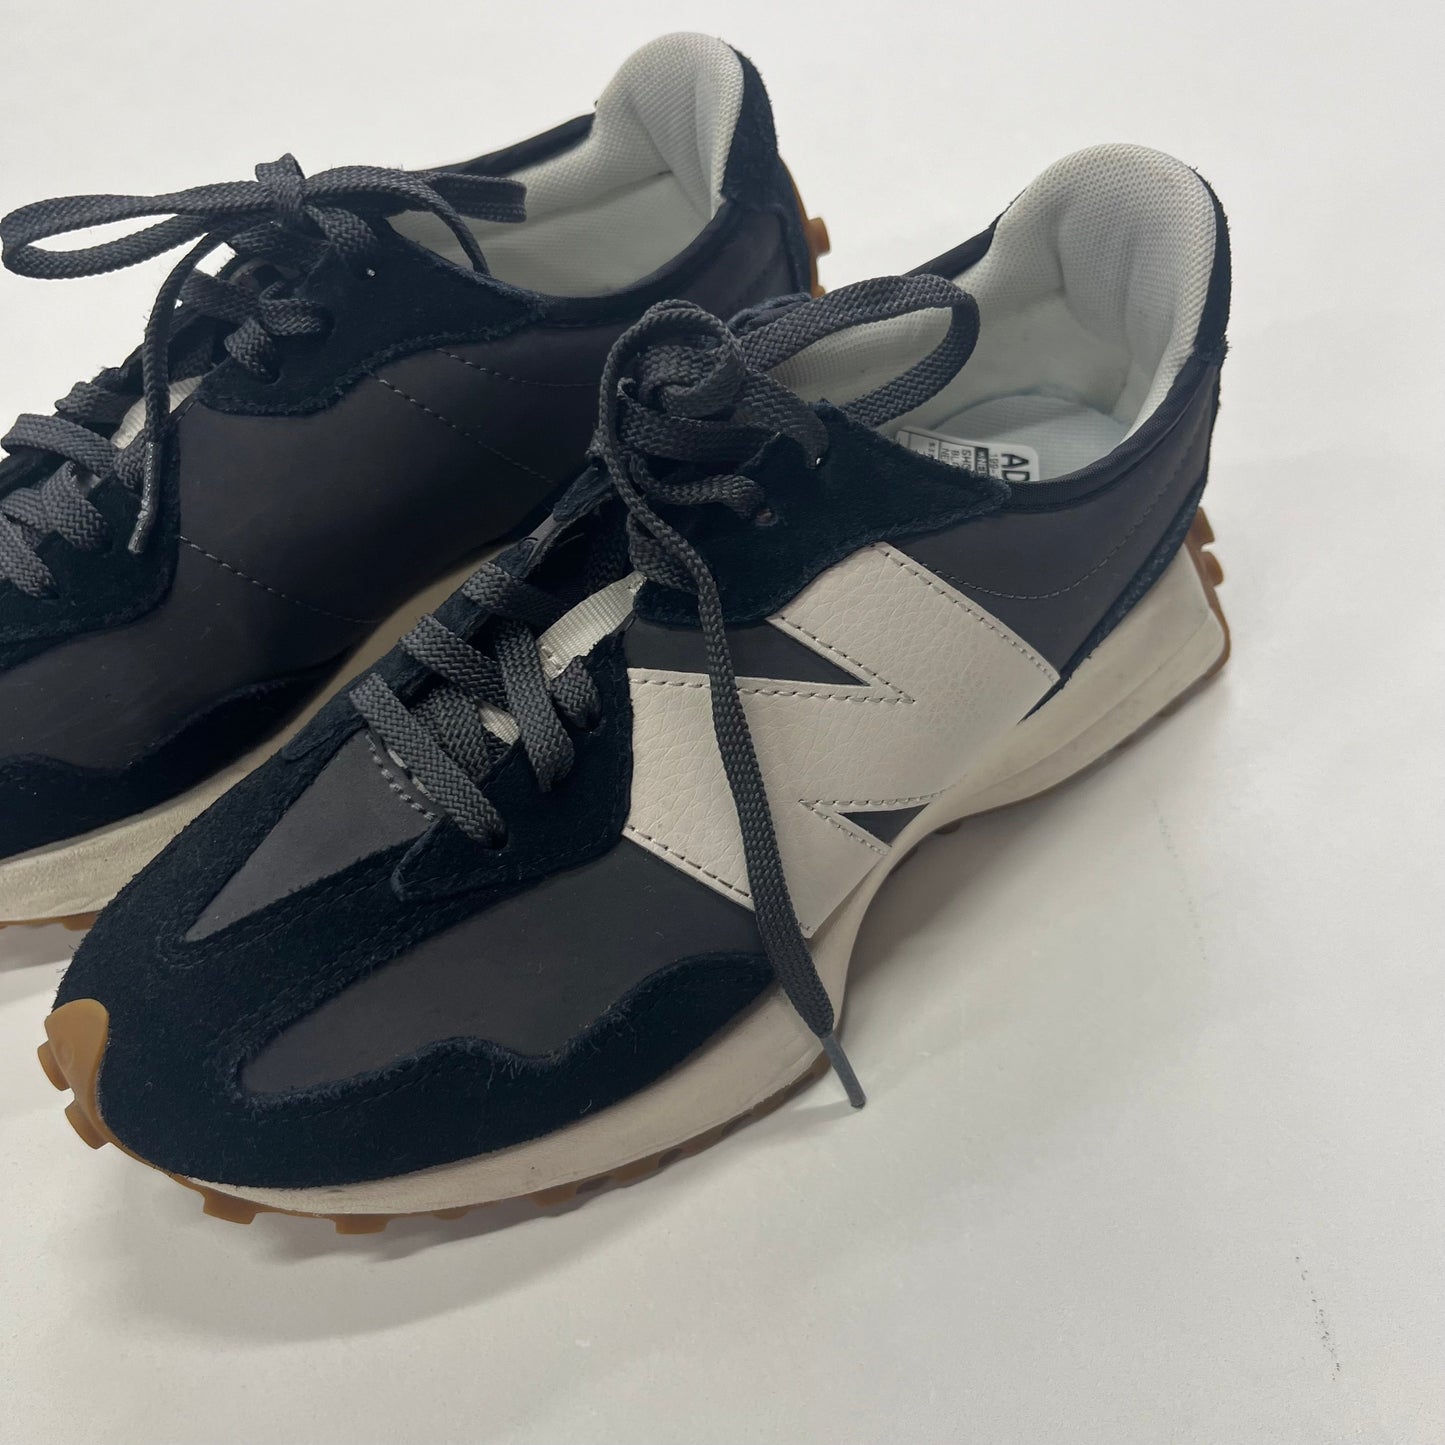 Black Shoes Athletic New Balance, Size 6.5